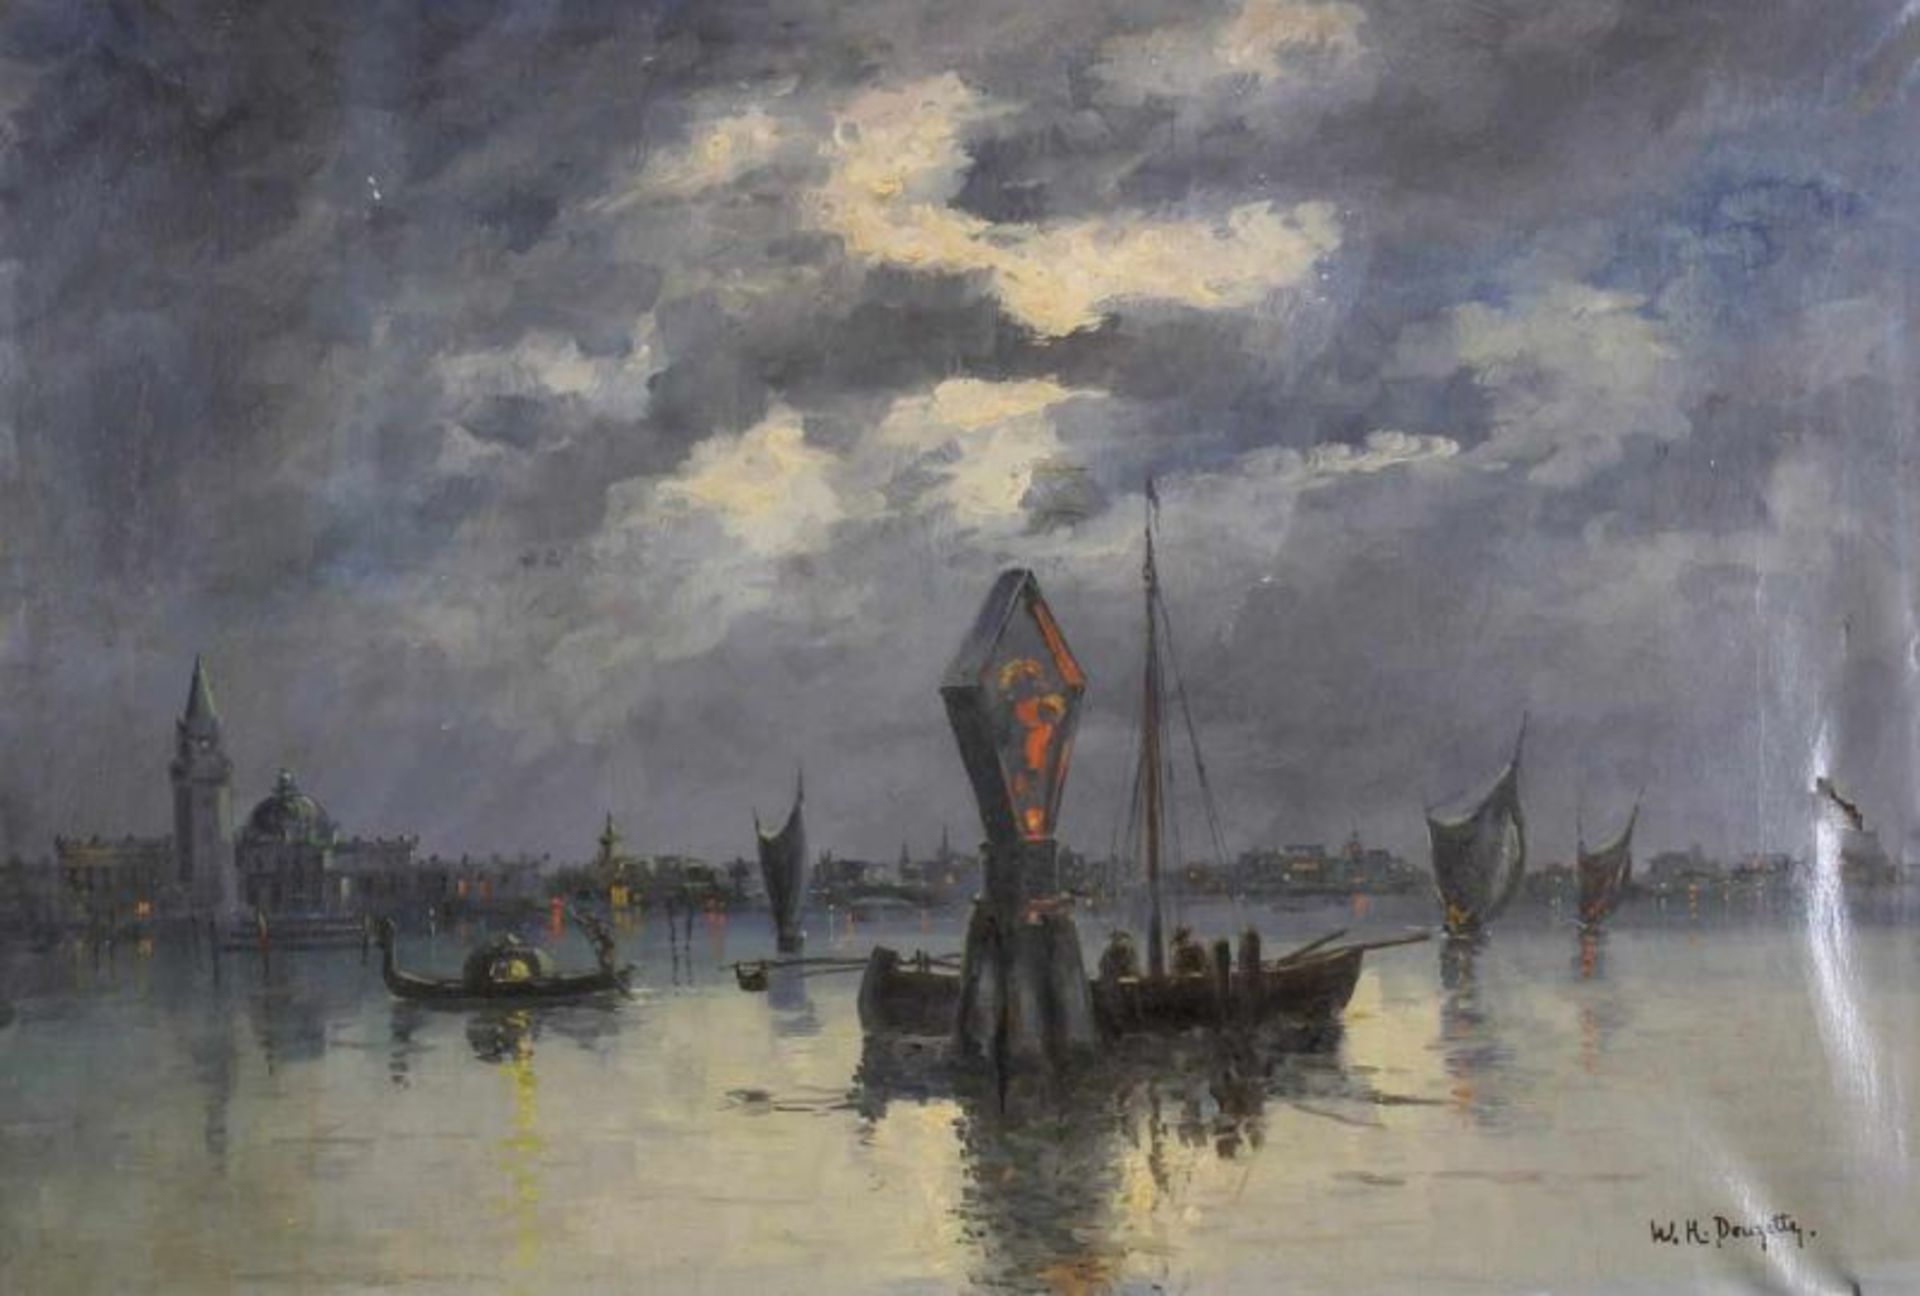 Douzette, W.H. (20. Jh.), "Nächtliche Ansicht von Venedig", Öl auf Leinwand, signiert unten rechts